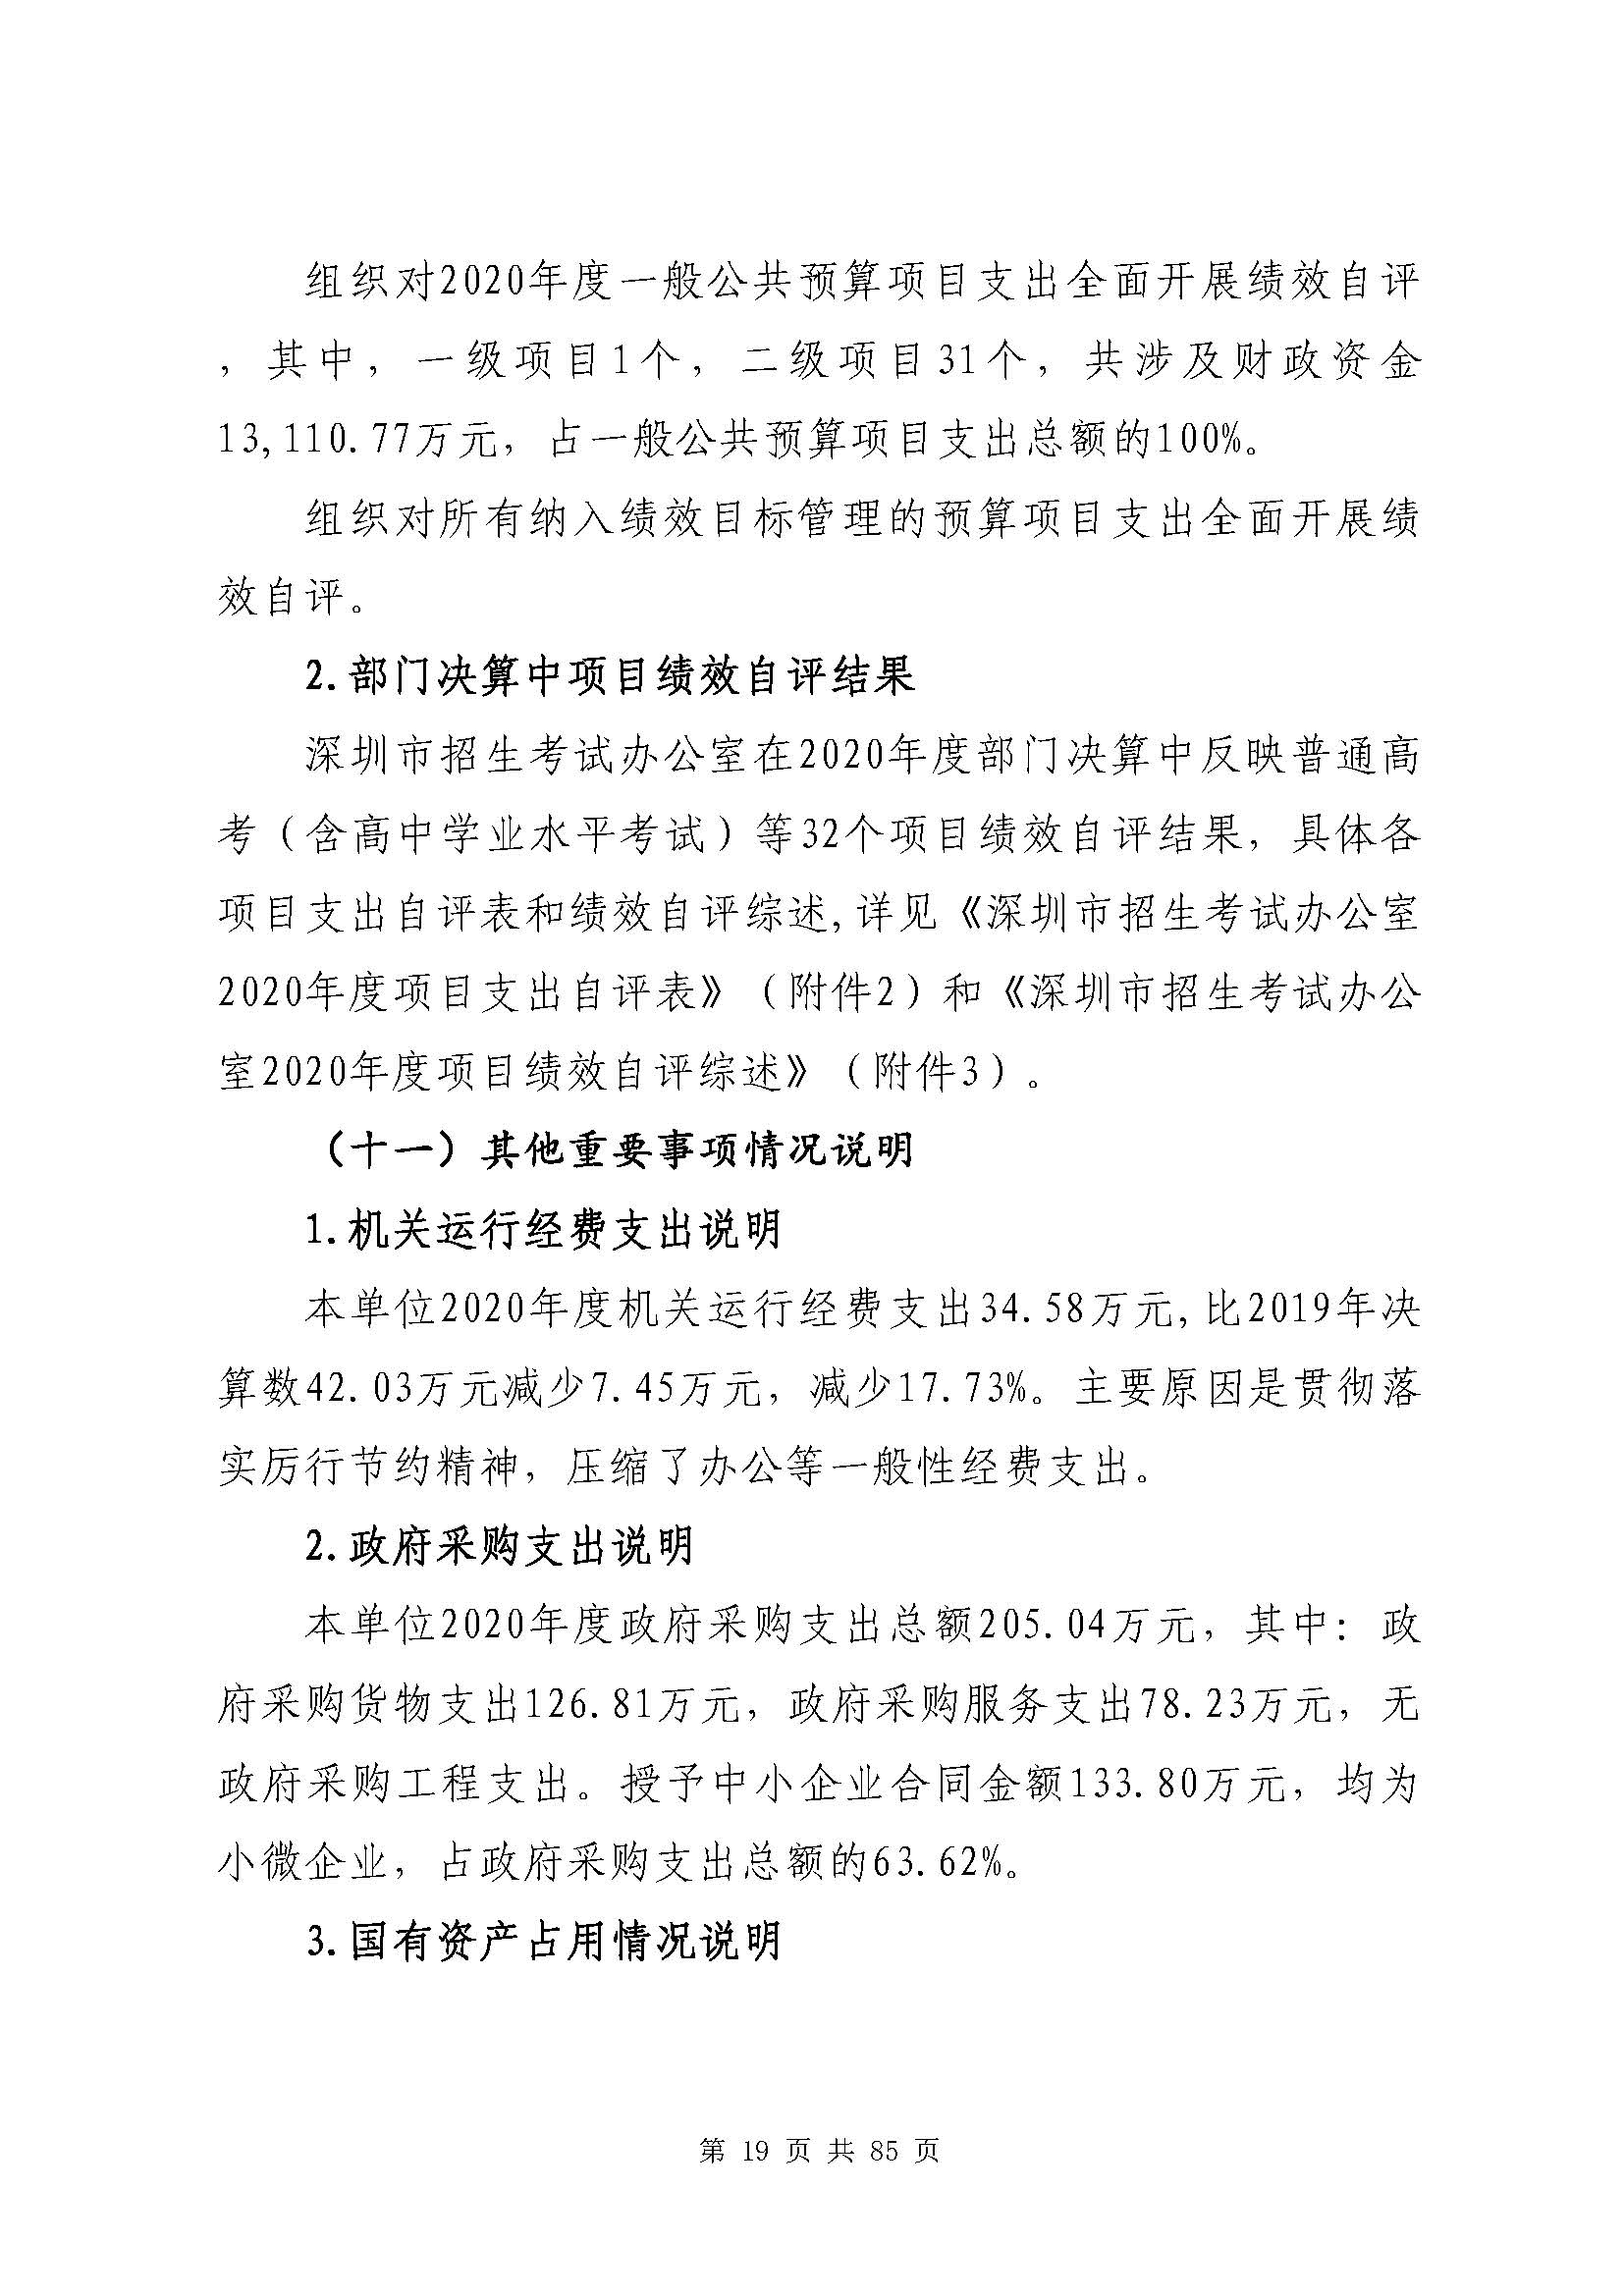 深圳市招生考试办公室2020年度部门决算_页面_20.jpg